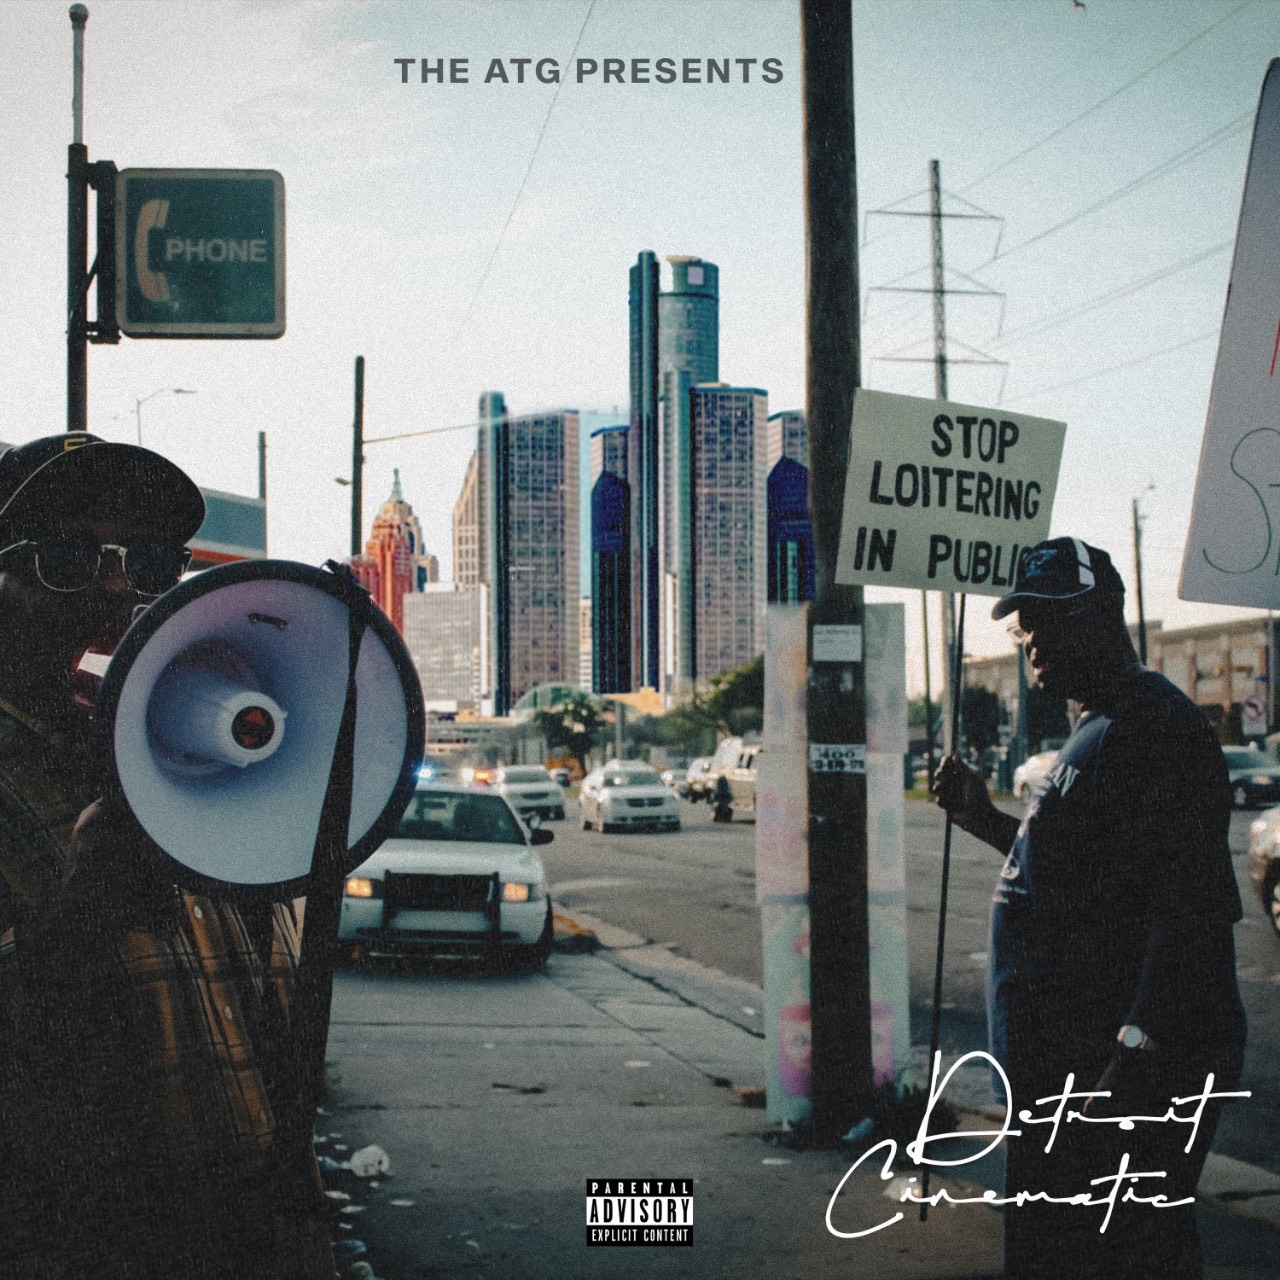 The ATG reveals 2nd studio album bringing together Detroit’s elite rappers 